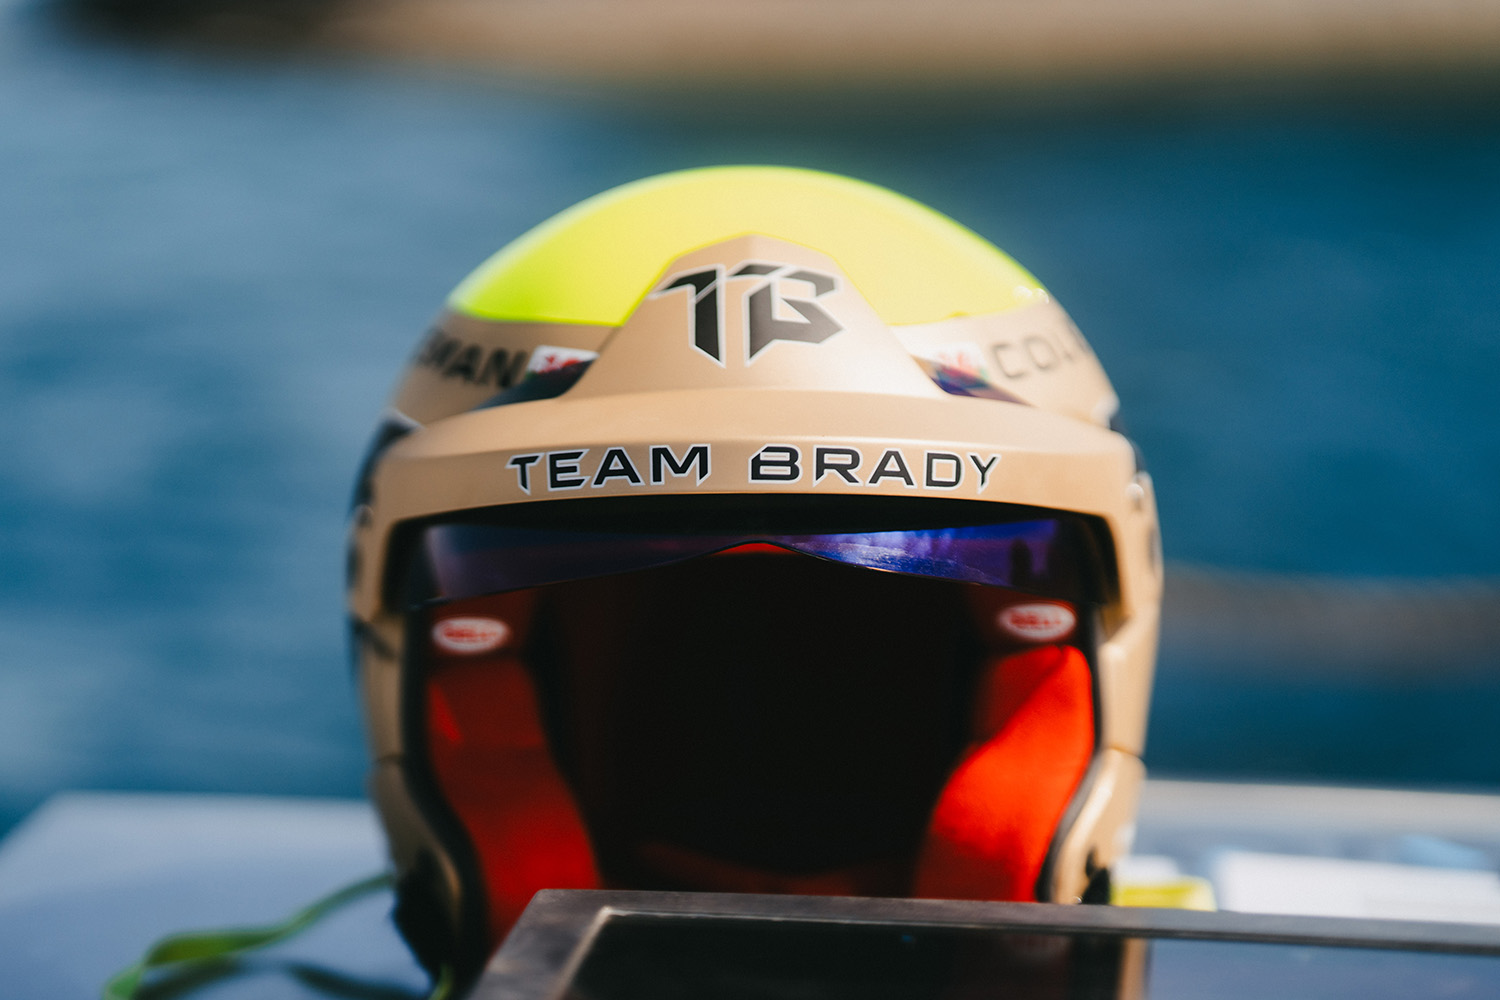 A close-up of a Team Brady pilot's helmet.